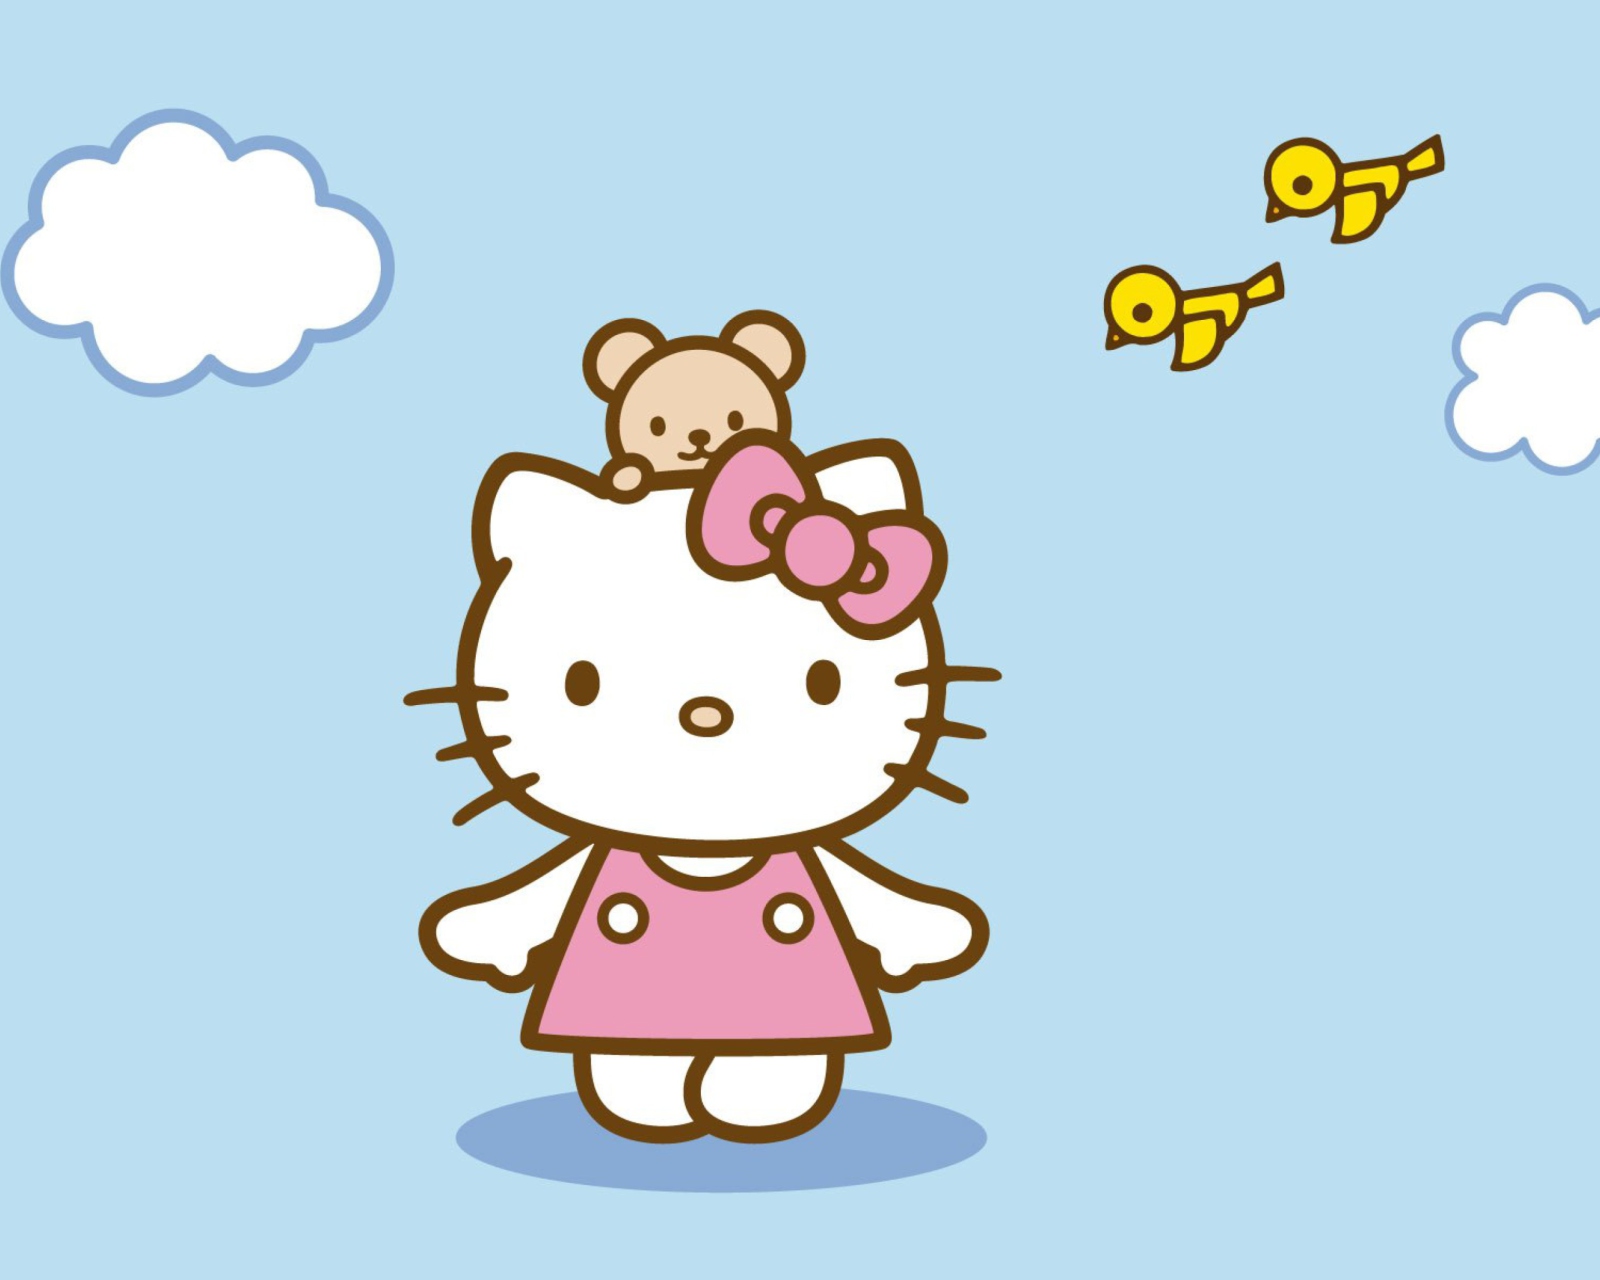 Обои Hello Kitty & Friend 1600x1280